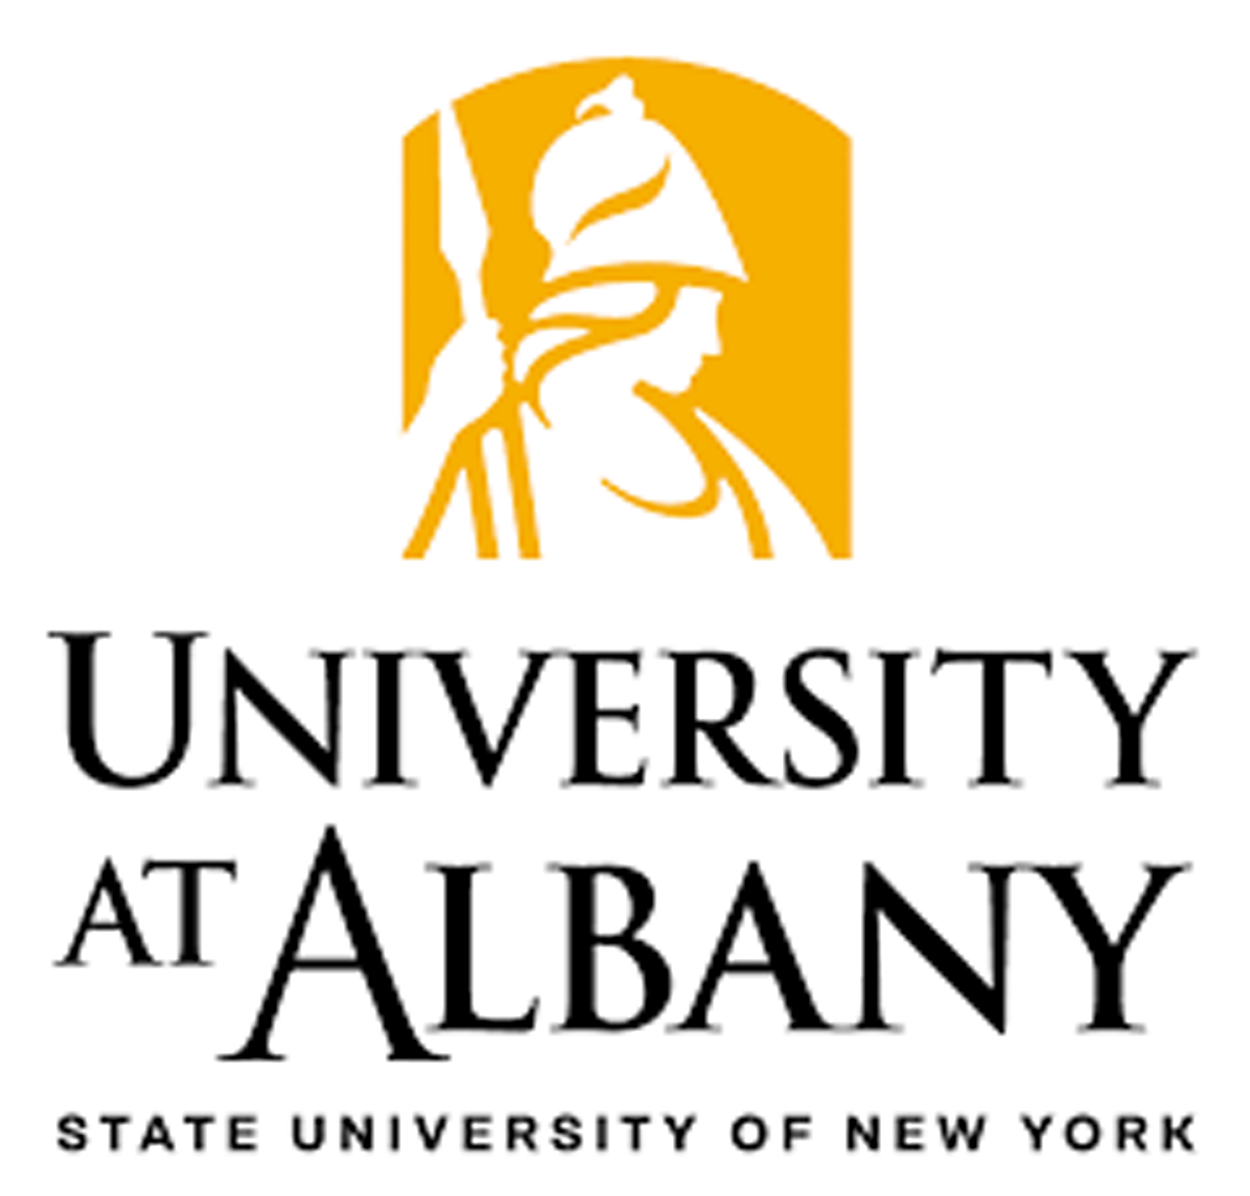 SUNY Albany